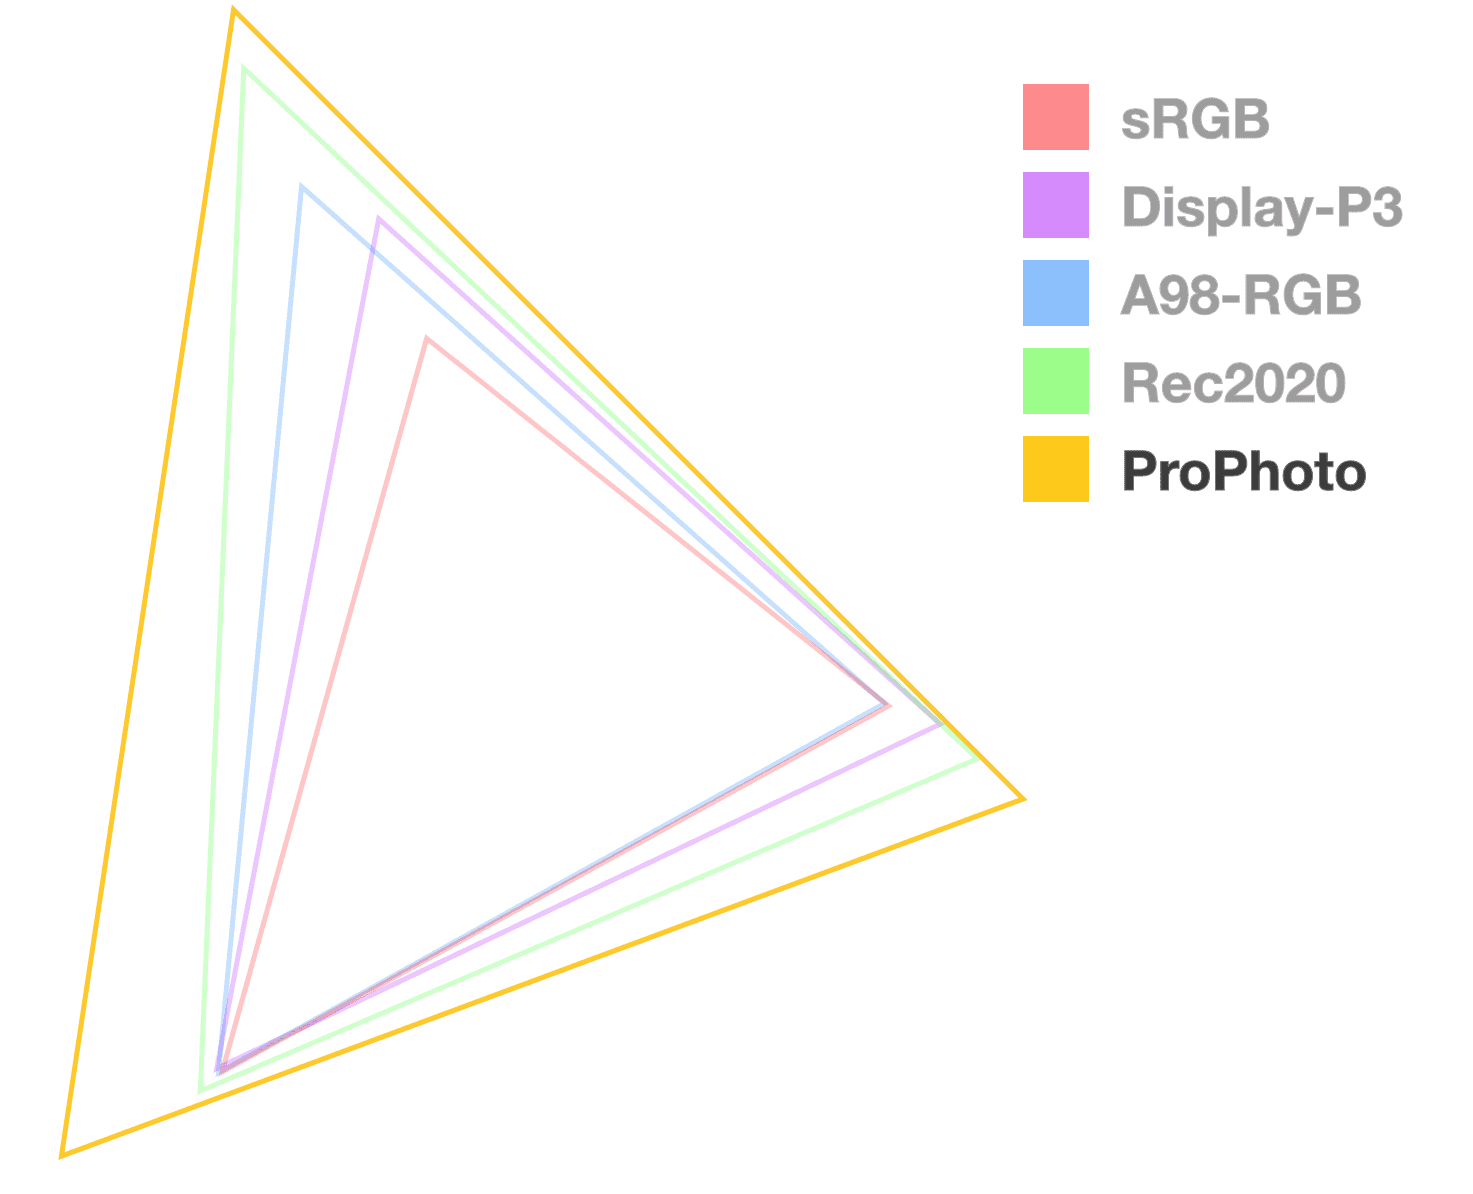 De ProPhoto-driehoek is de enige die volledig ondoorzichtig is en helpt de grootte van het kleurengamma te visualiseren. Het lijkt de grootste.